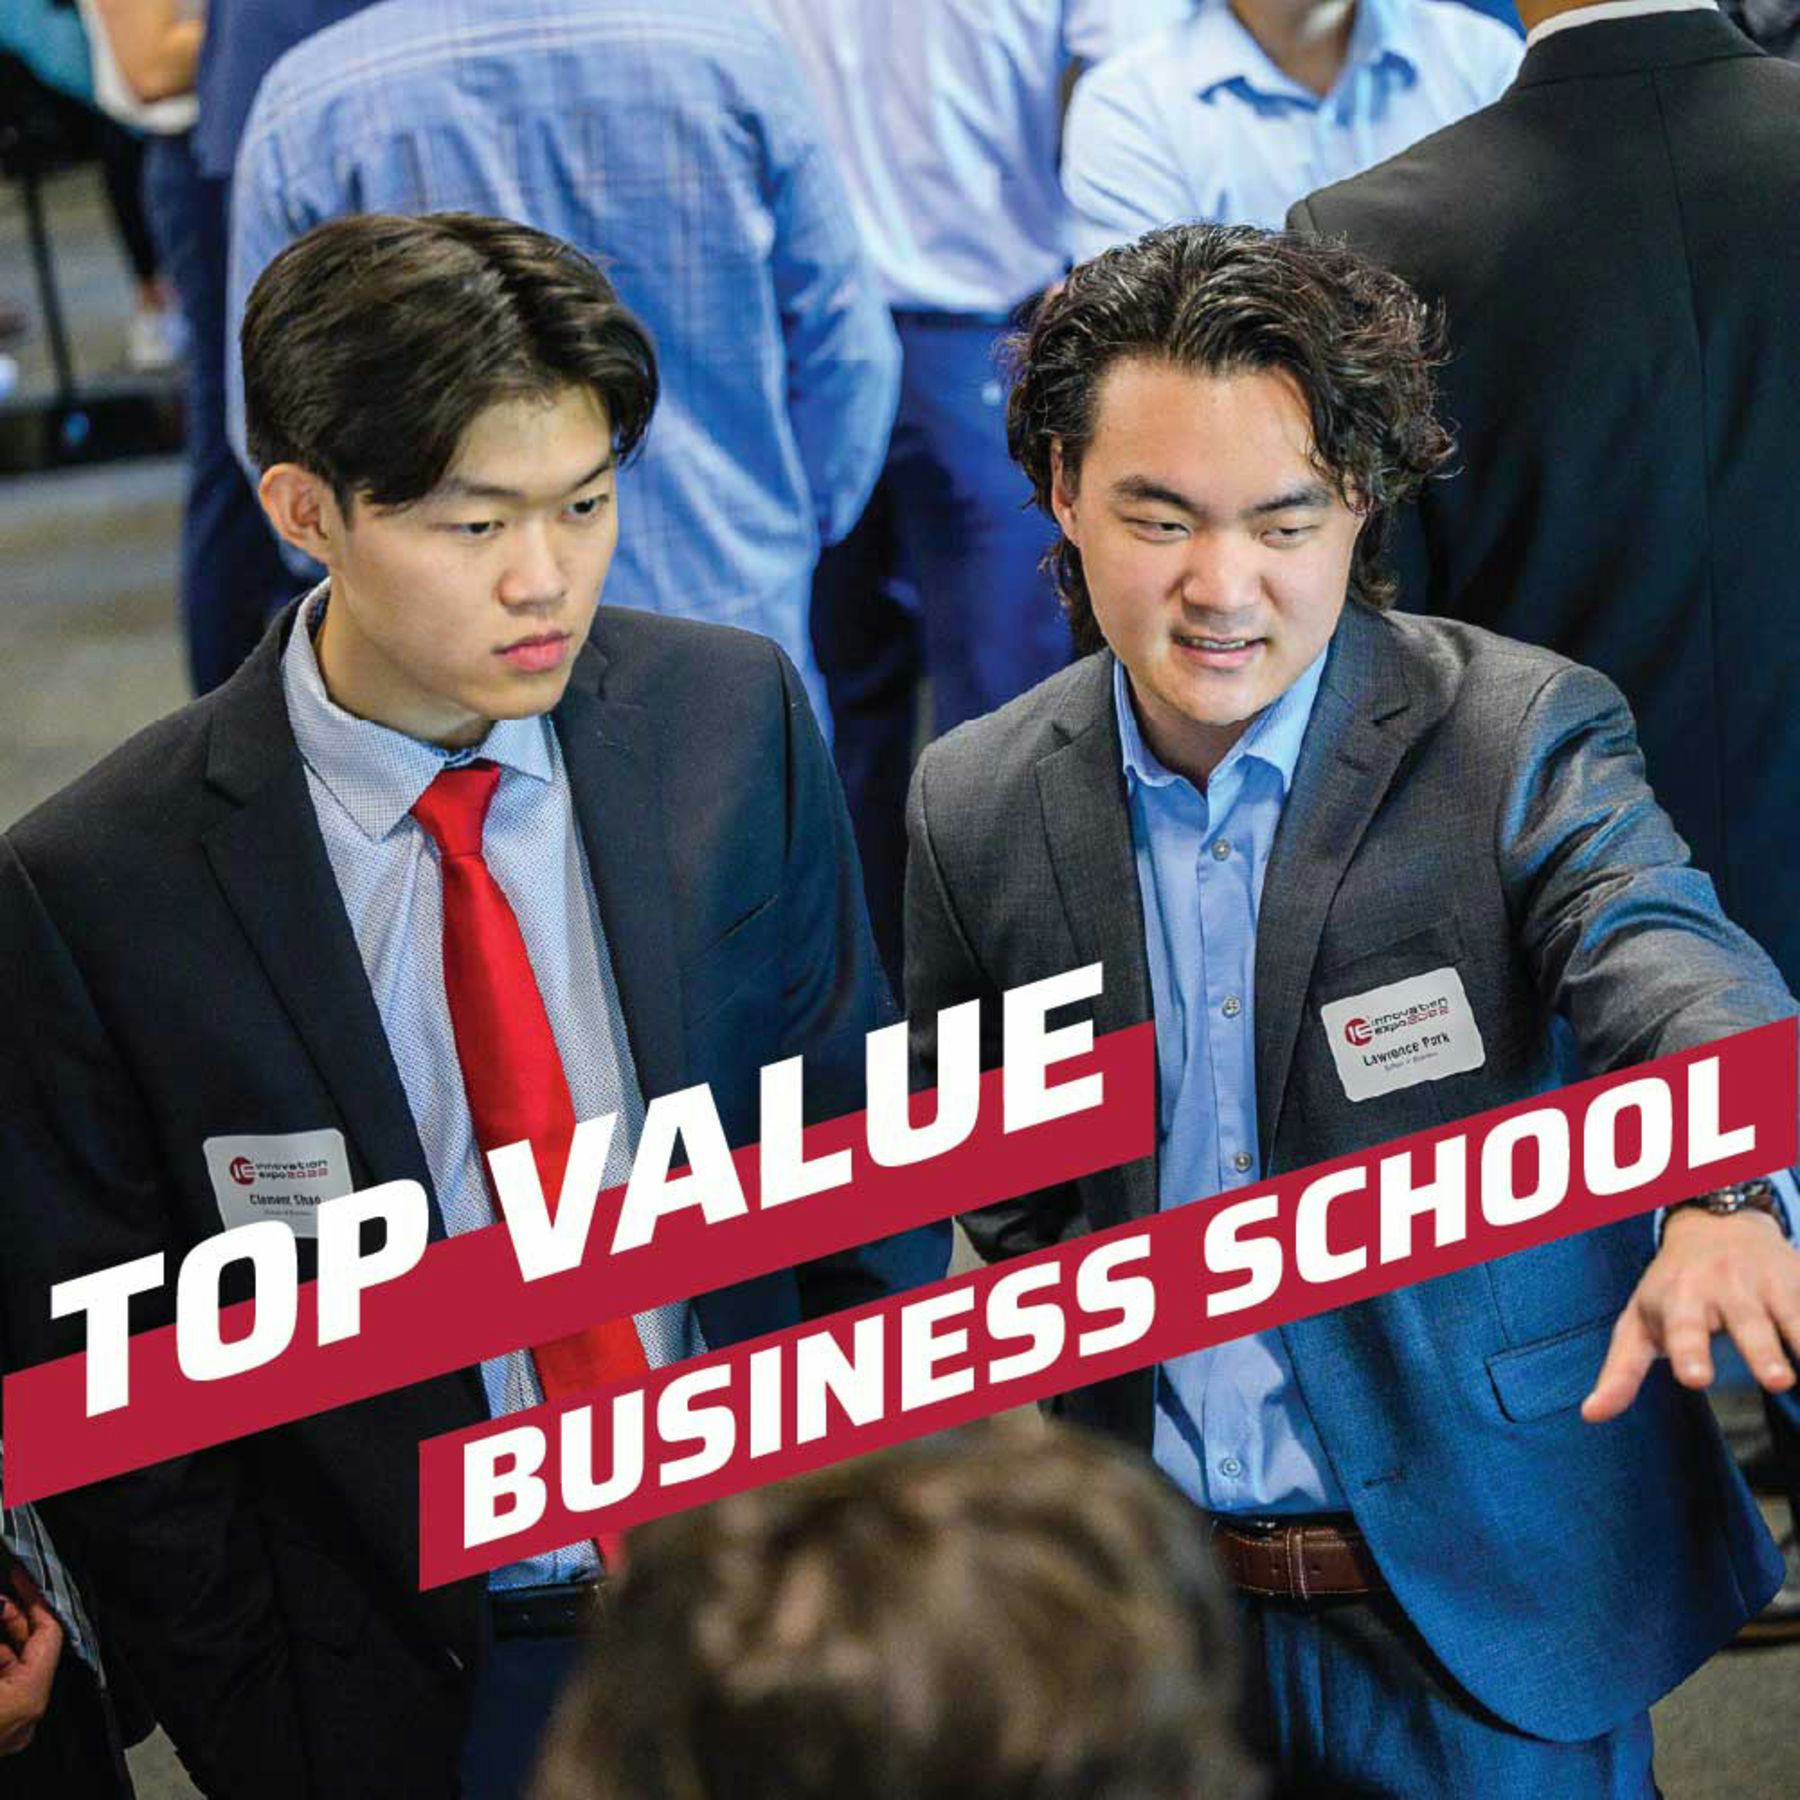 Top Value Business School